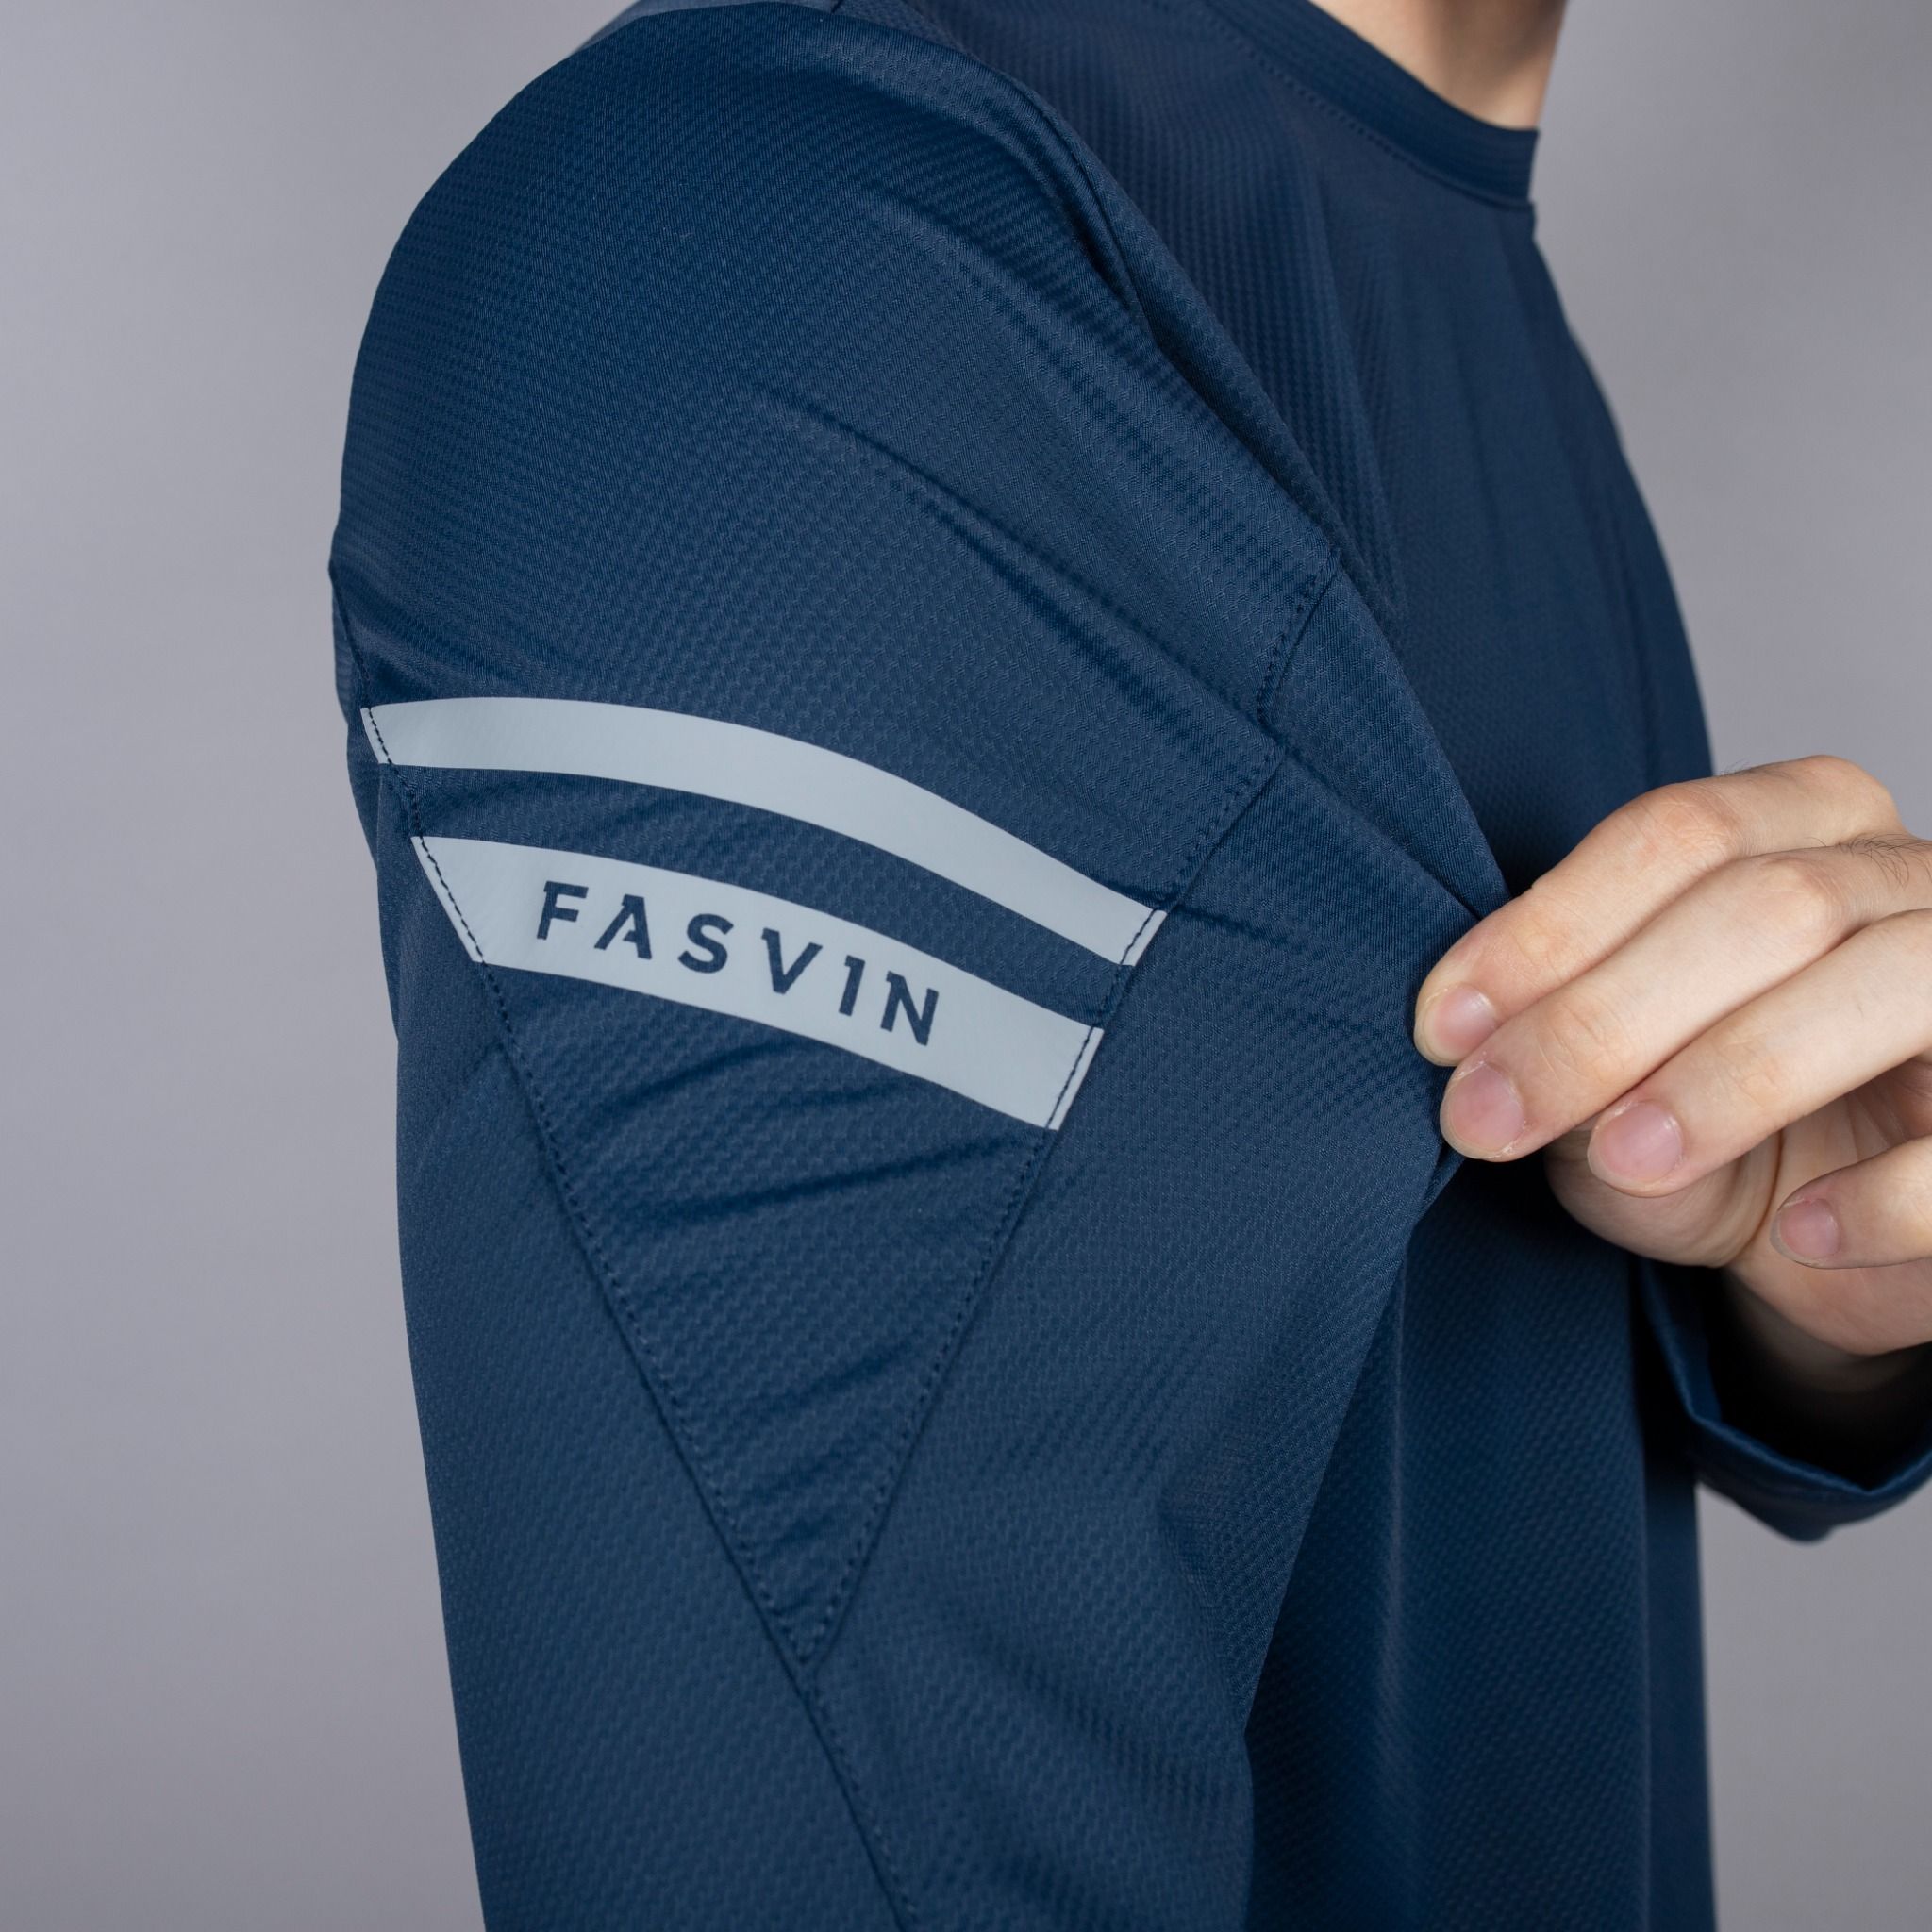  Áo thun dài tay nam Fasvin AD23598 chất vải Nylon cao cấp mềm mại co giãn hàng đẹp chính hãng 